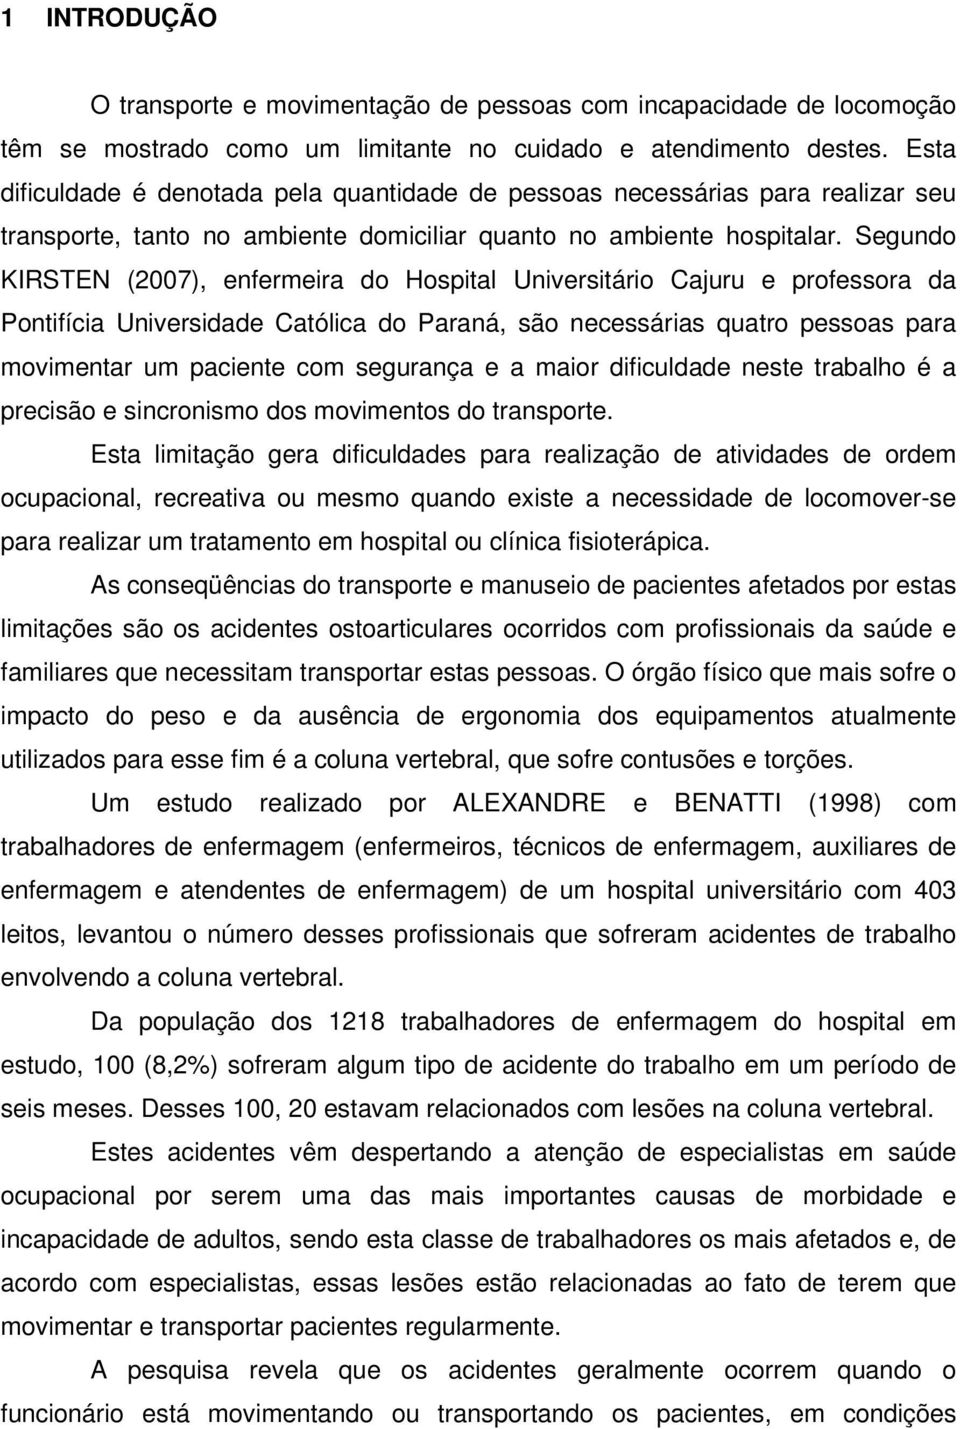 Segundo KIRSTEN (2007), enfermeira do Hospital Universitário Cajuru e professora da Pontifícia Universidade Católica do Paraná, são necessárias quatro pessoas para movimentar um paciente com